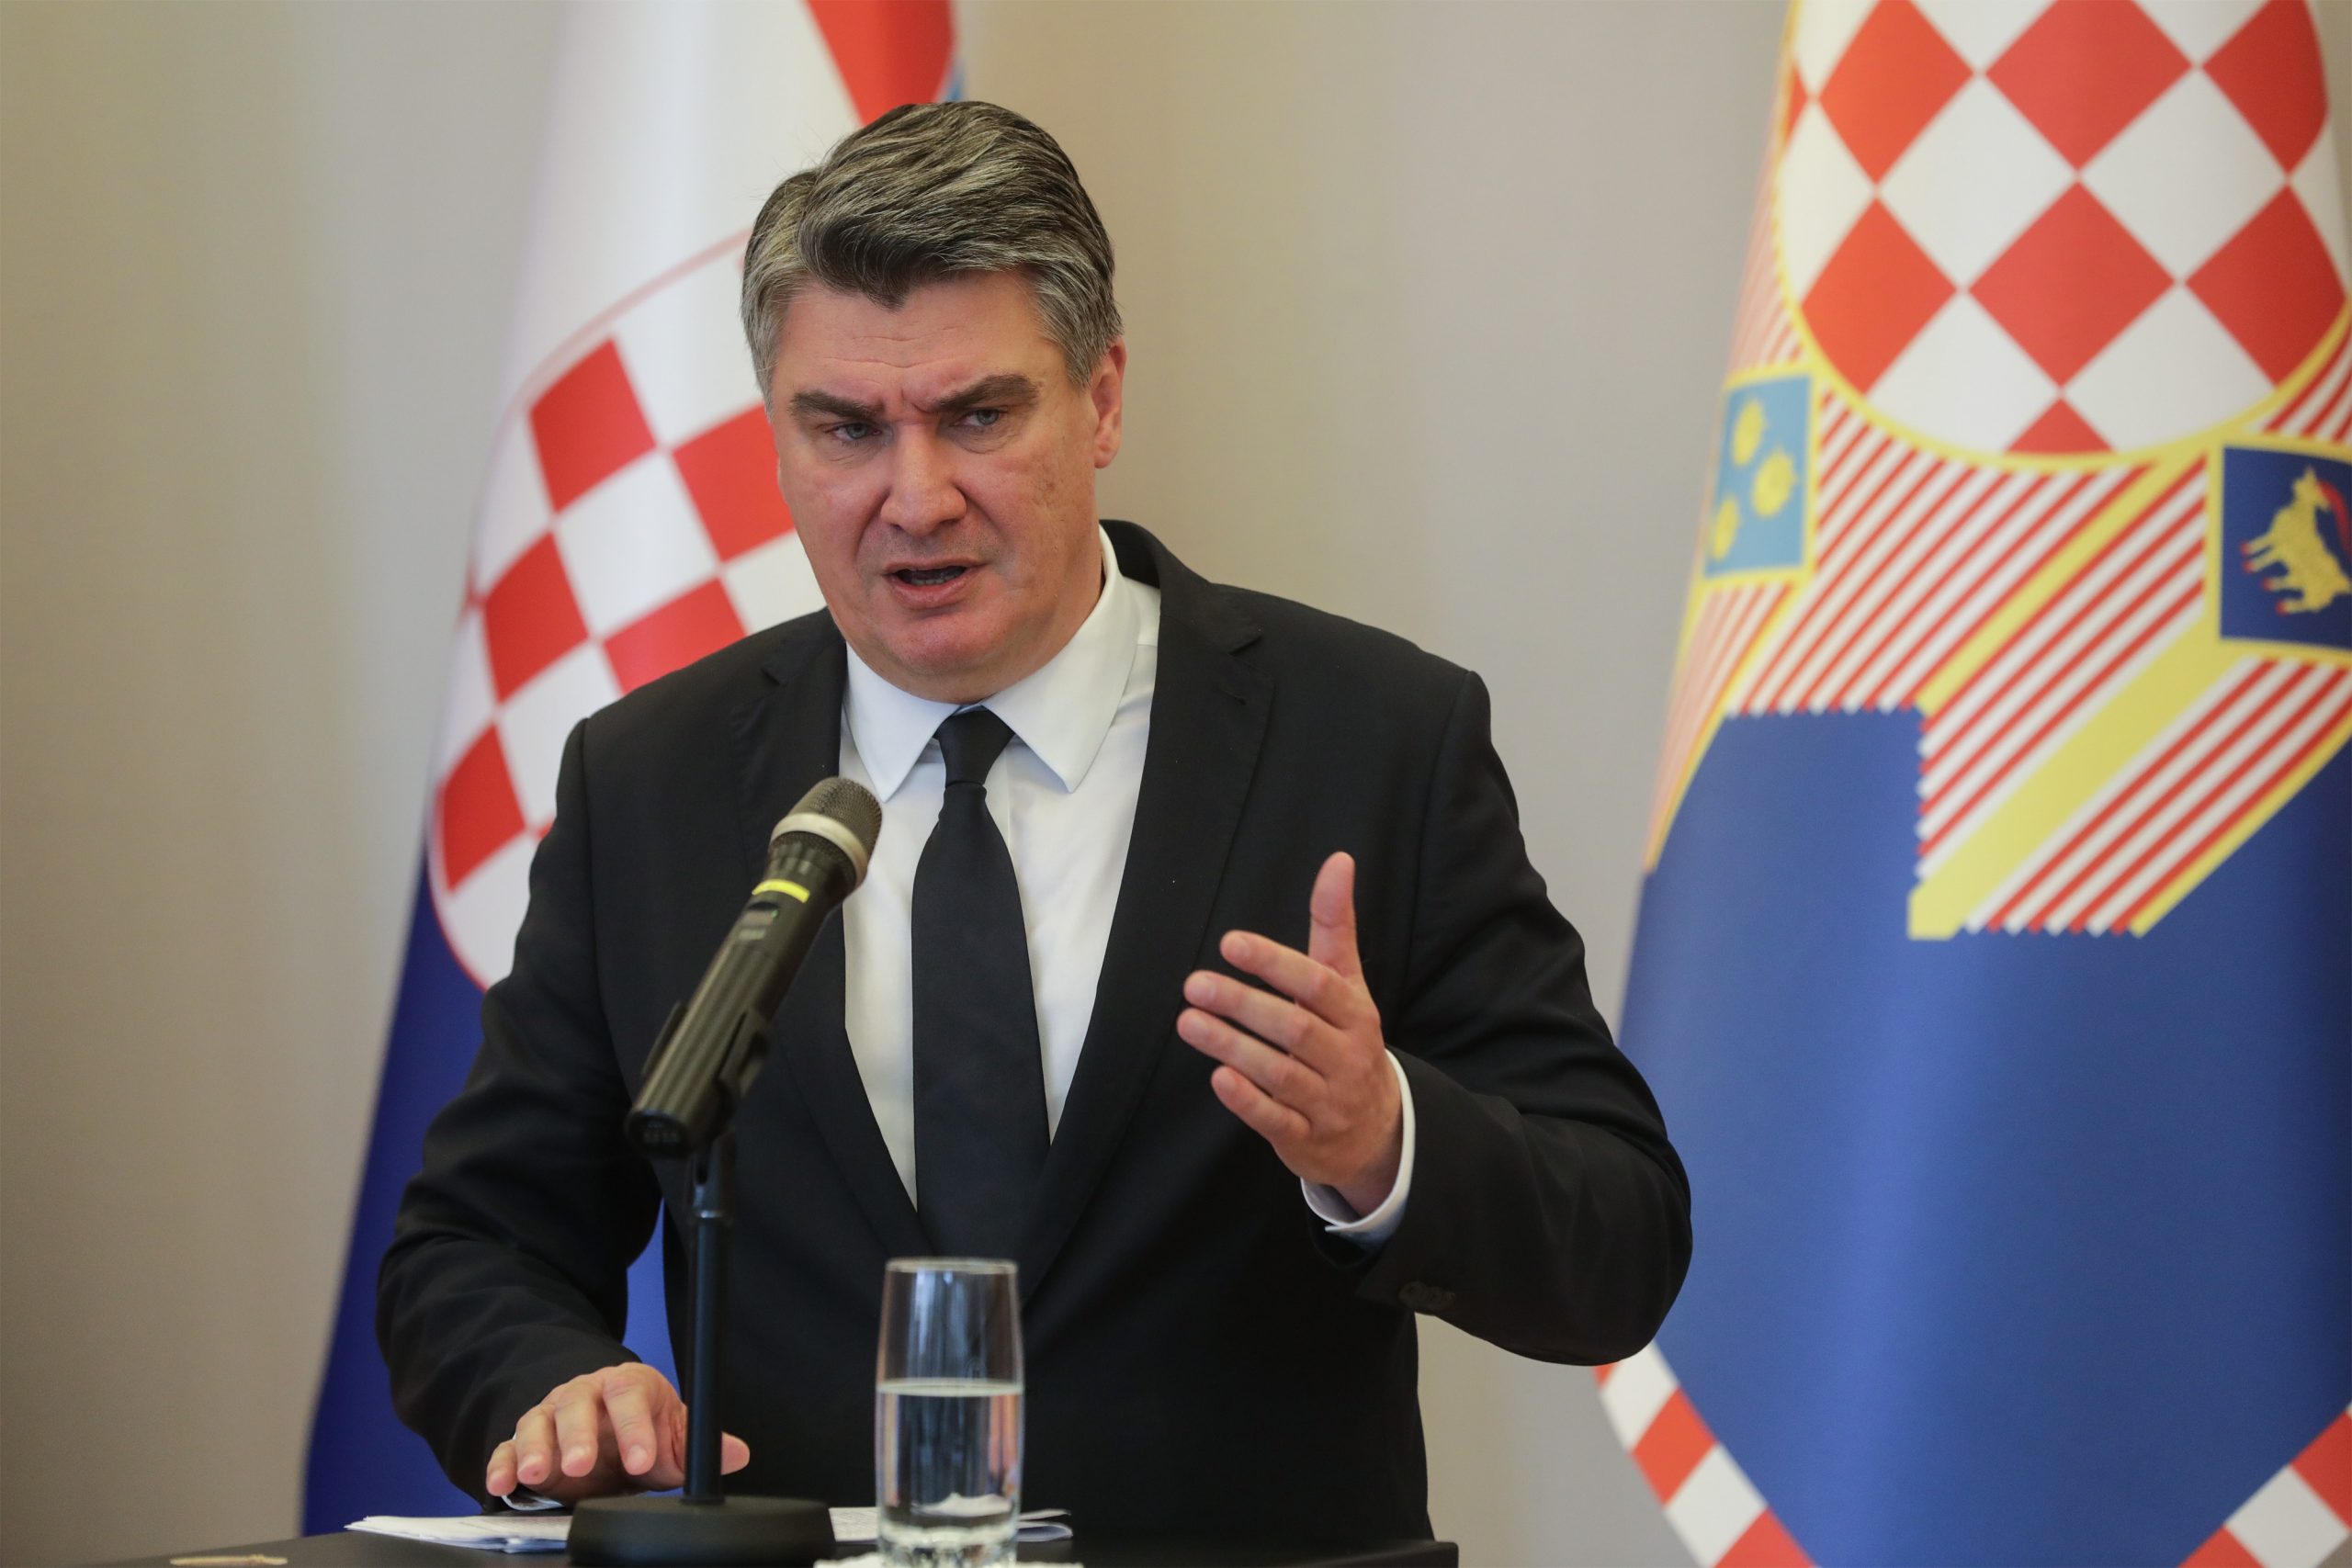 23.10.2020., Zagreb,  Predsjednik RH Zoran Milanovic odrzao je konferenciju za medije.
Photo: Robert Anic/PIXSELL